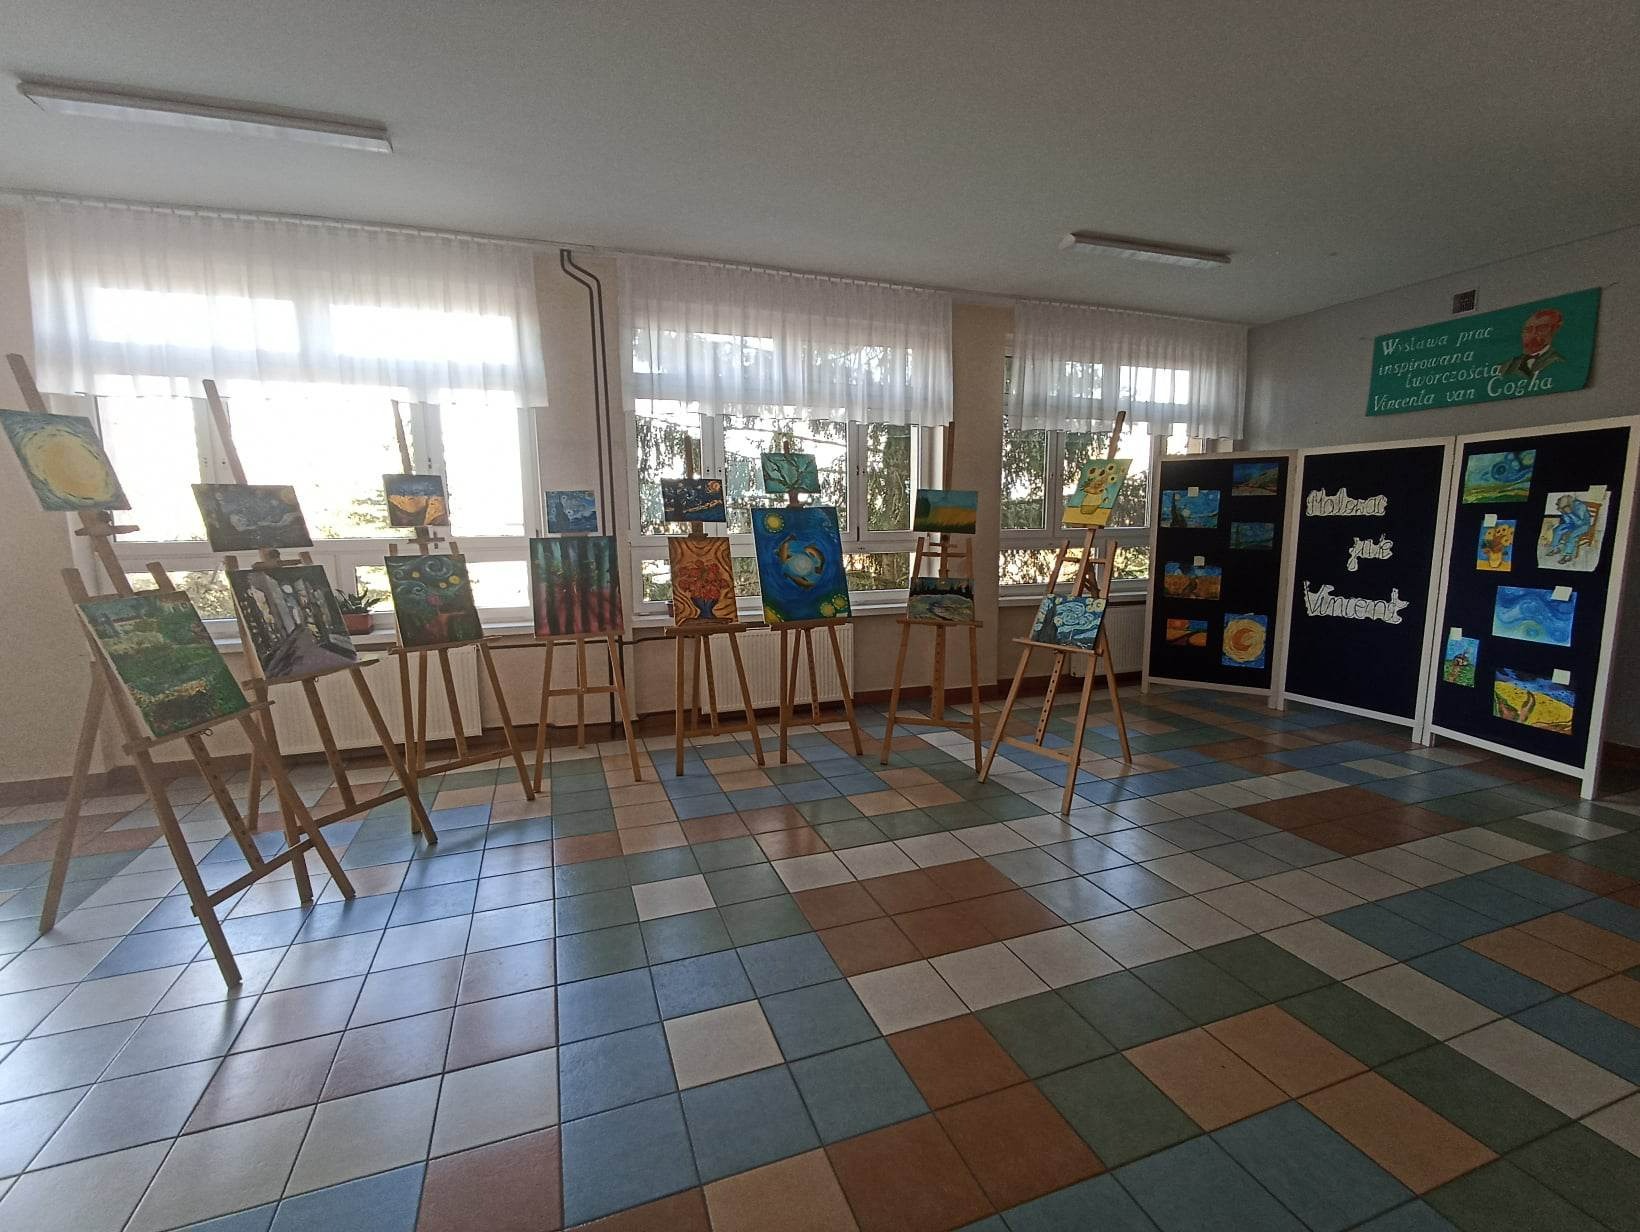 Prace plastyczne uczniów inspirowane twórczością van Gogha